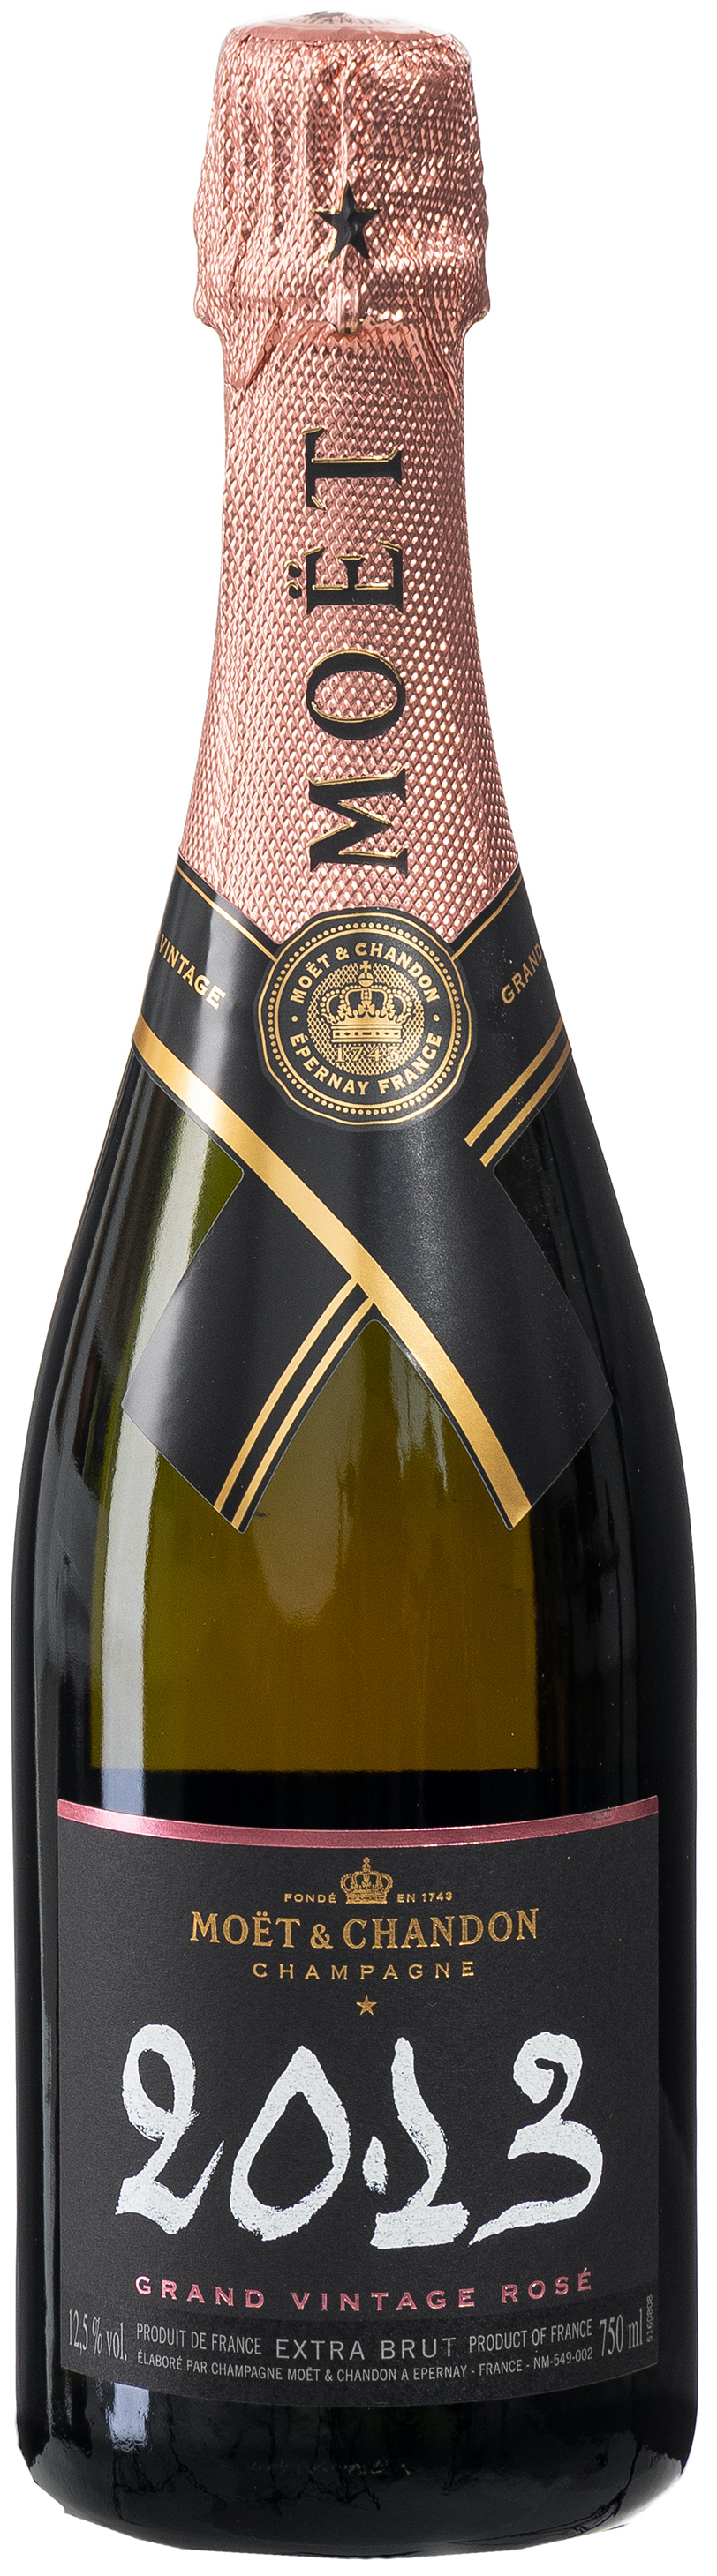 Moët & Chandon Grand Vintage Rosé 2013 Champagner 12% vol. 0,75L